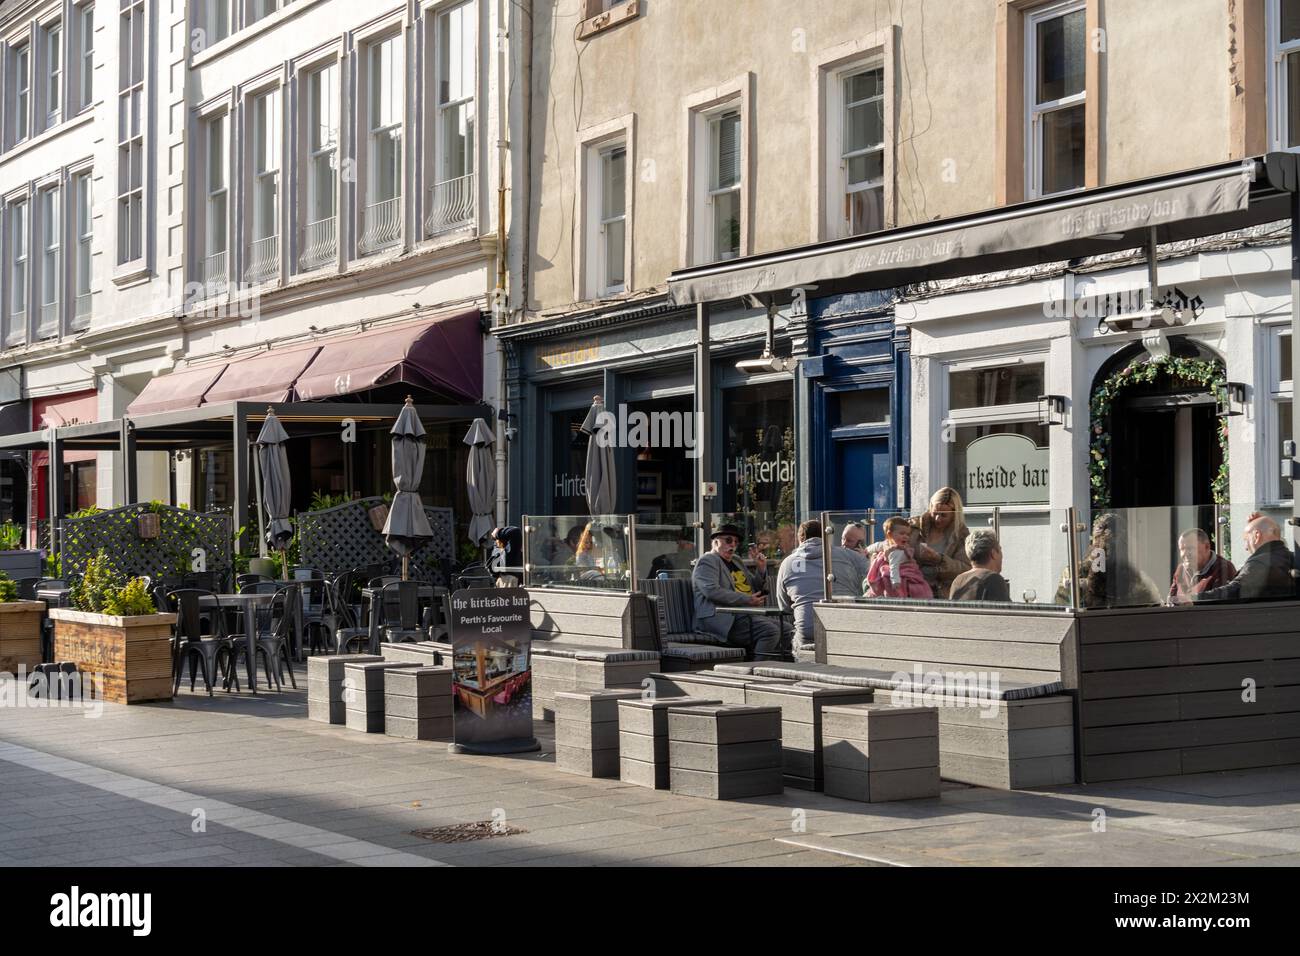 Ristoranti con terrazze all'aperto in stile europeo su St John's Place nella città scozzese di Perth, Scozia, Regno Unito Foto Stock